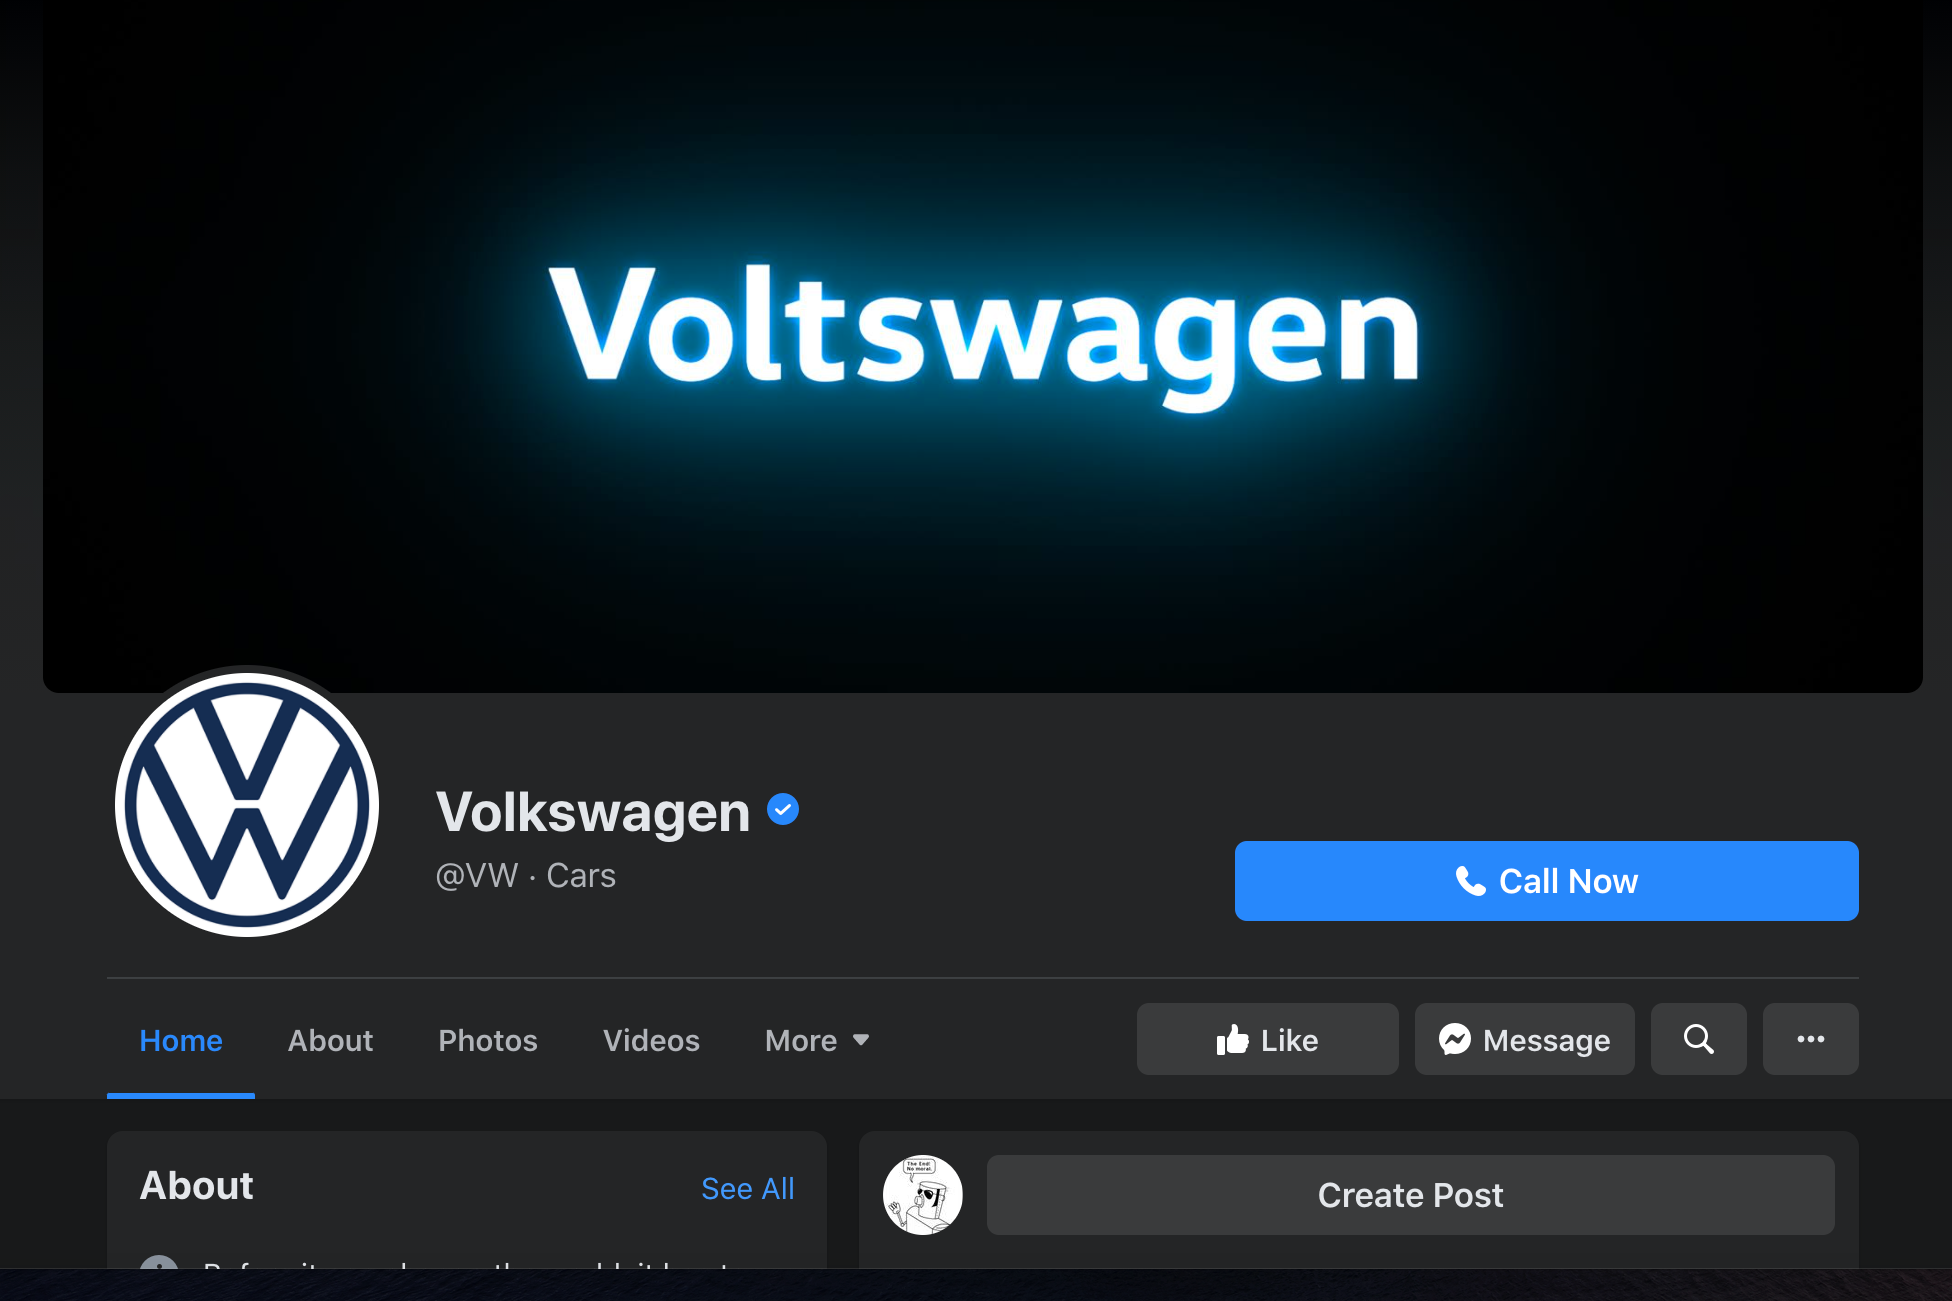 The Voltswagen Facebook banner